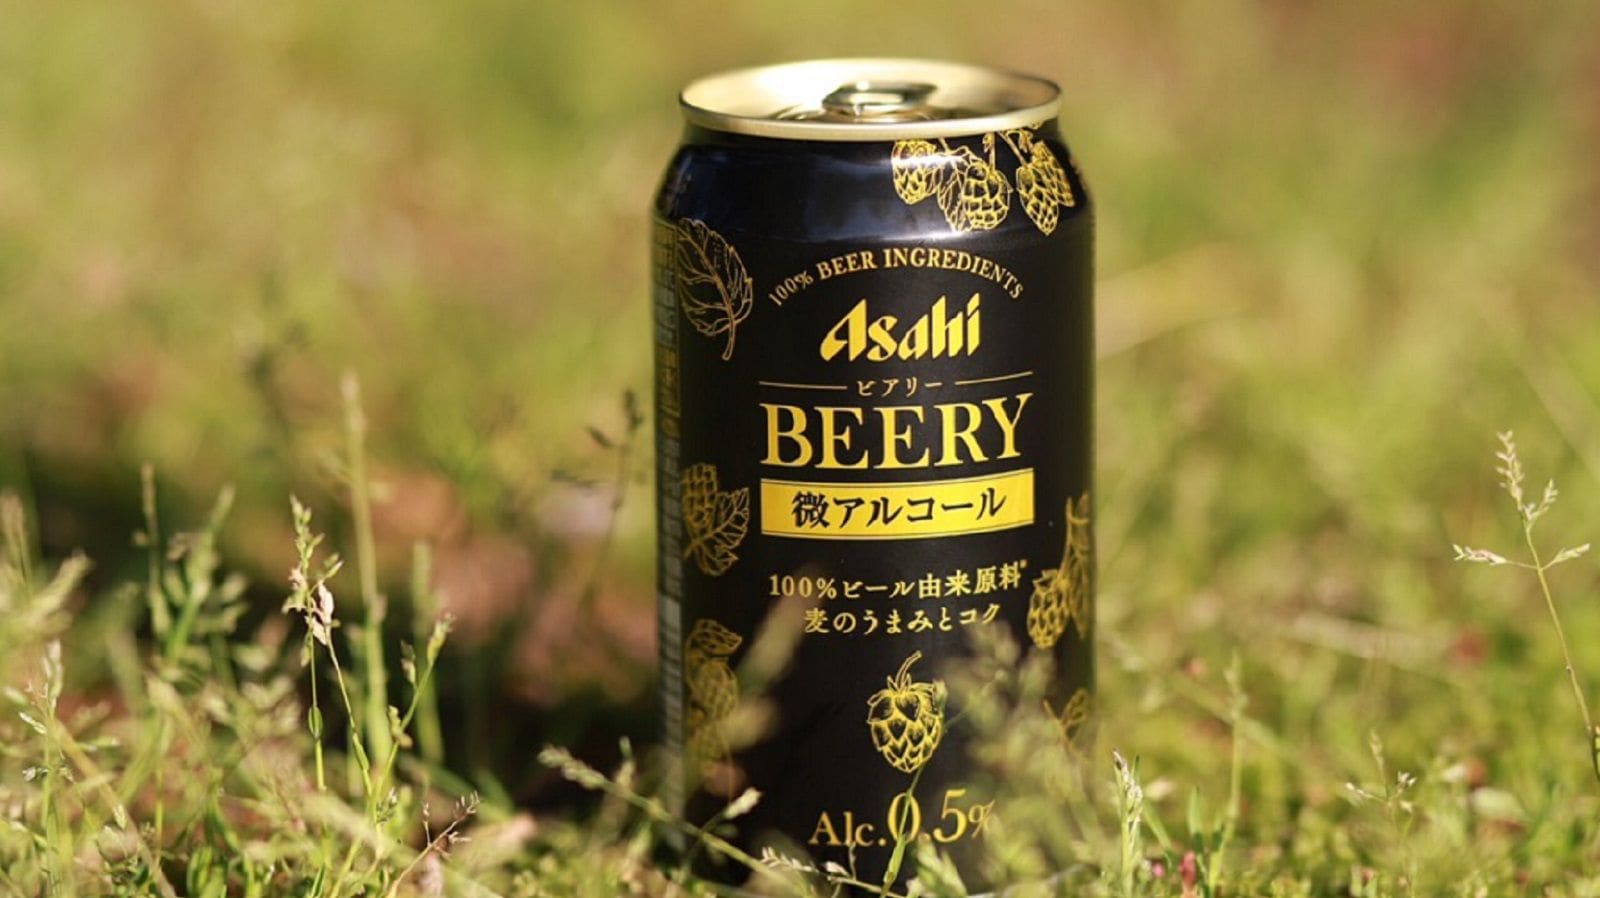 アサヒが ビール風味の低アル飲料 に託す使命 食品 東洋経済オンライン 社会をよくする経済ニュース